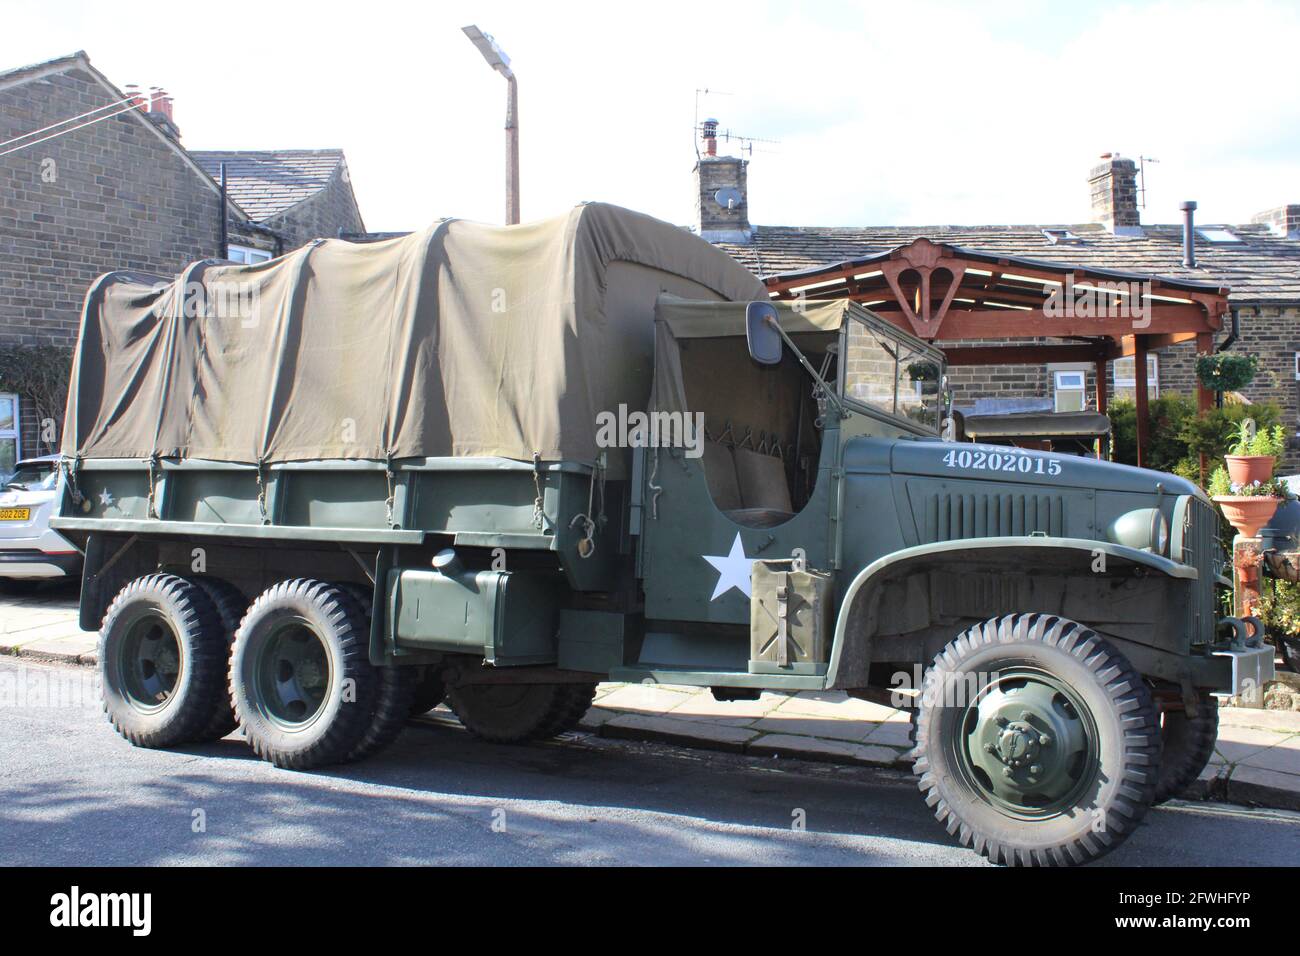 Gmc Cckw 2 Ton 6 6 Vintage Us Army Truck Also Bekannt Als Jimmy Seitenansicht Stockfotografie Alamy